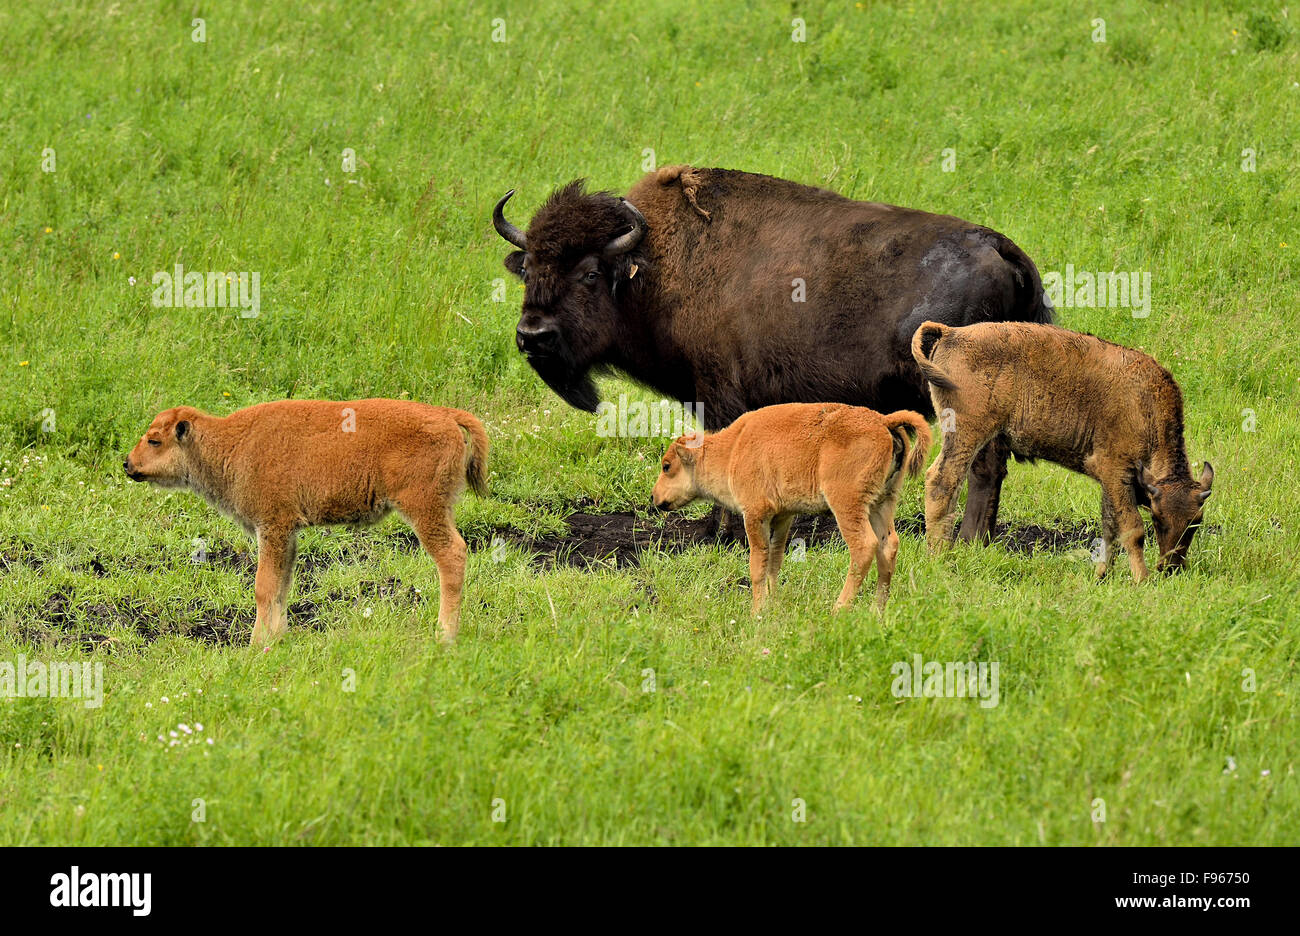 Eine Mutter Kälber Bison Bison Bison, mit jungen, Fütterung und Nahrungssuche auf dem grünen Rasen Wiese Stockfoto